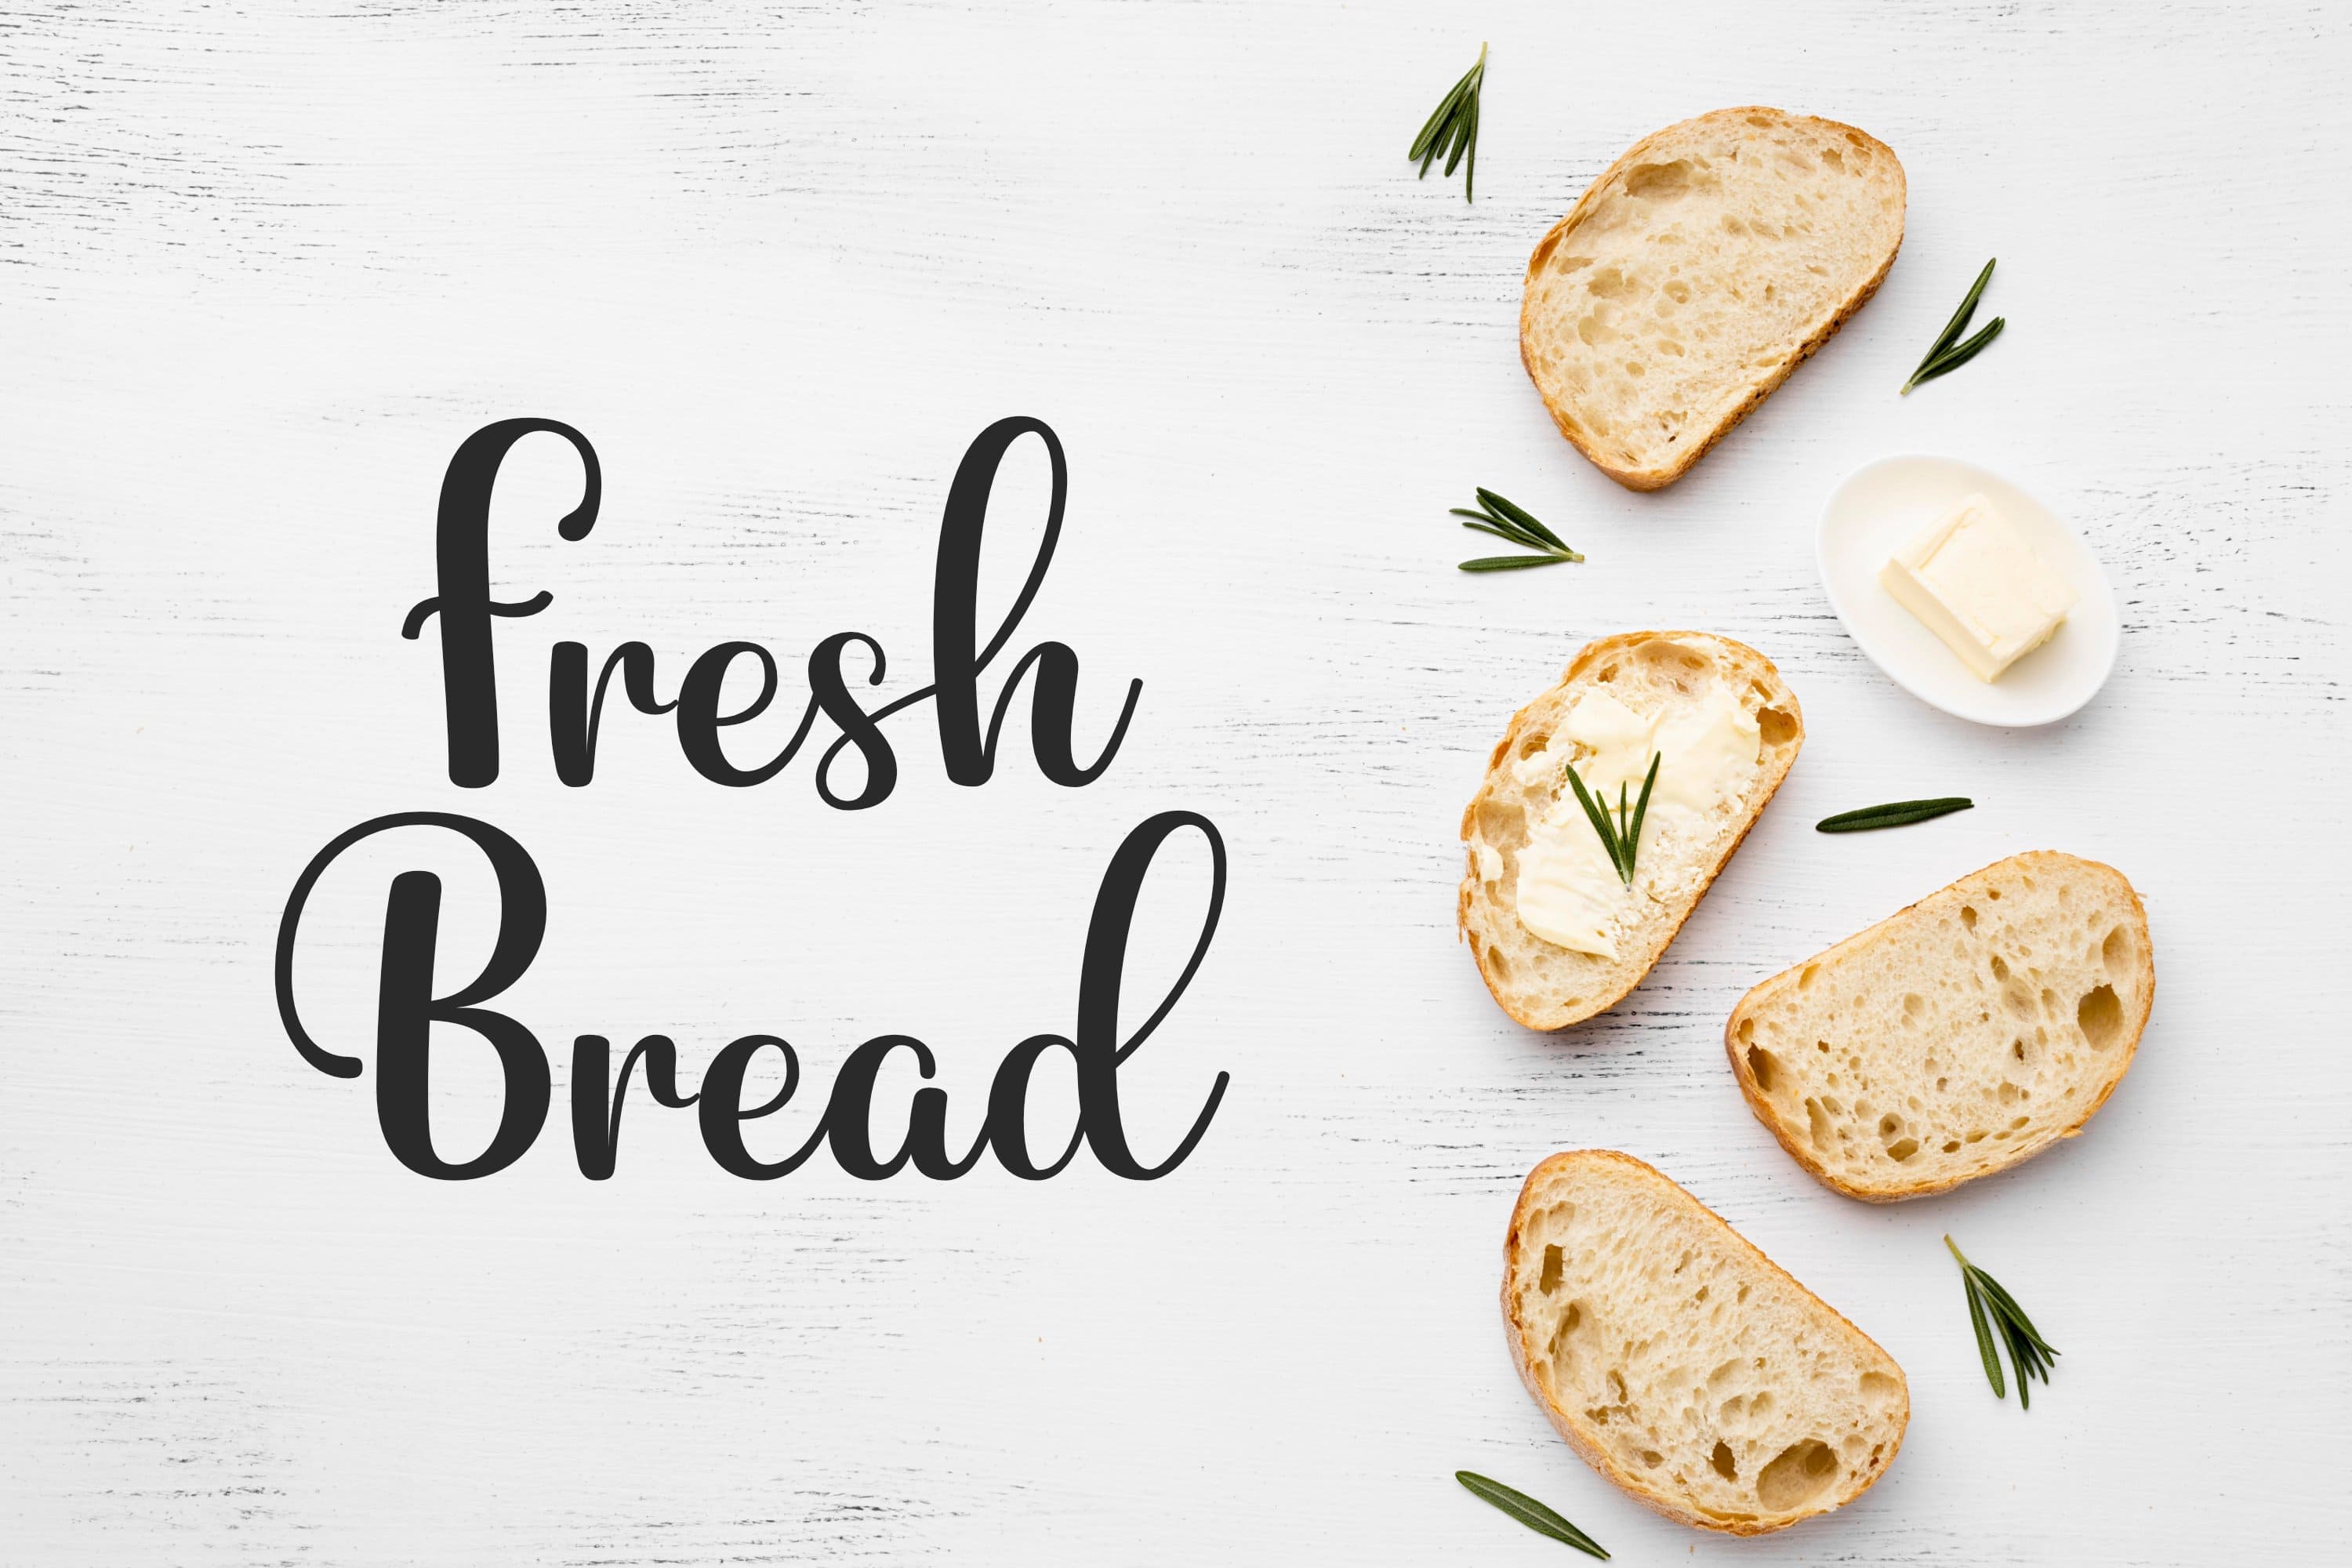 Betterside, fresh Bread.